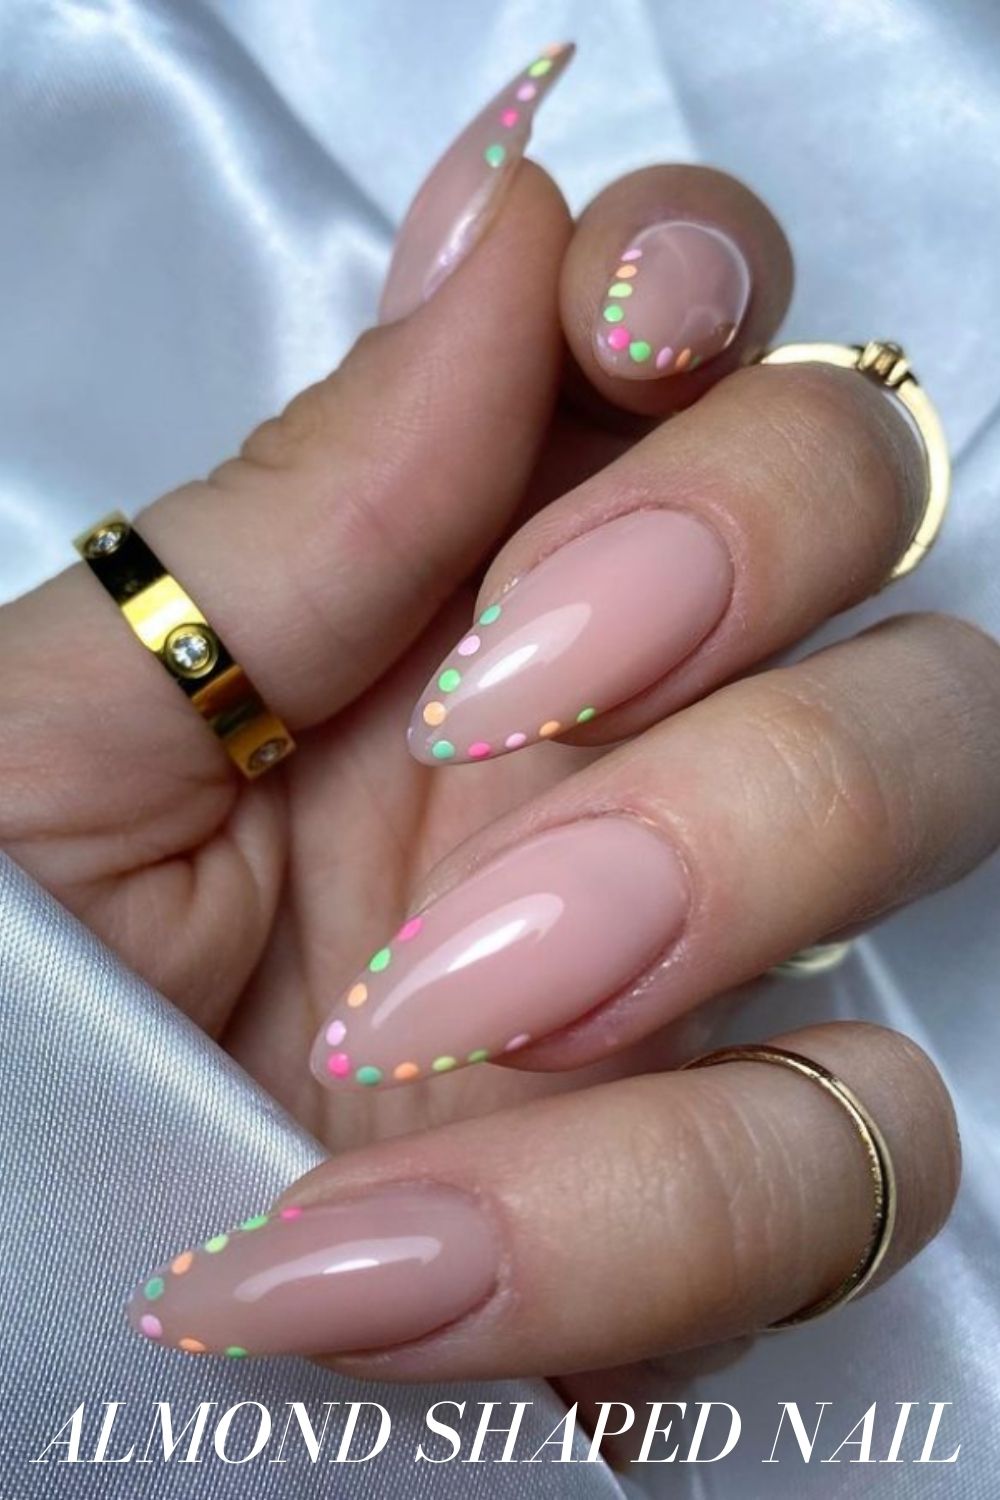 Cute almond nails